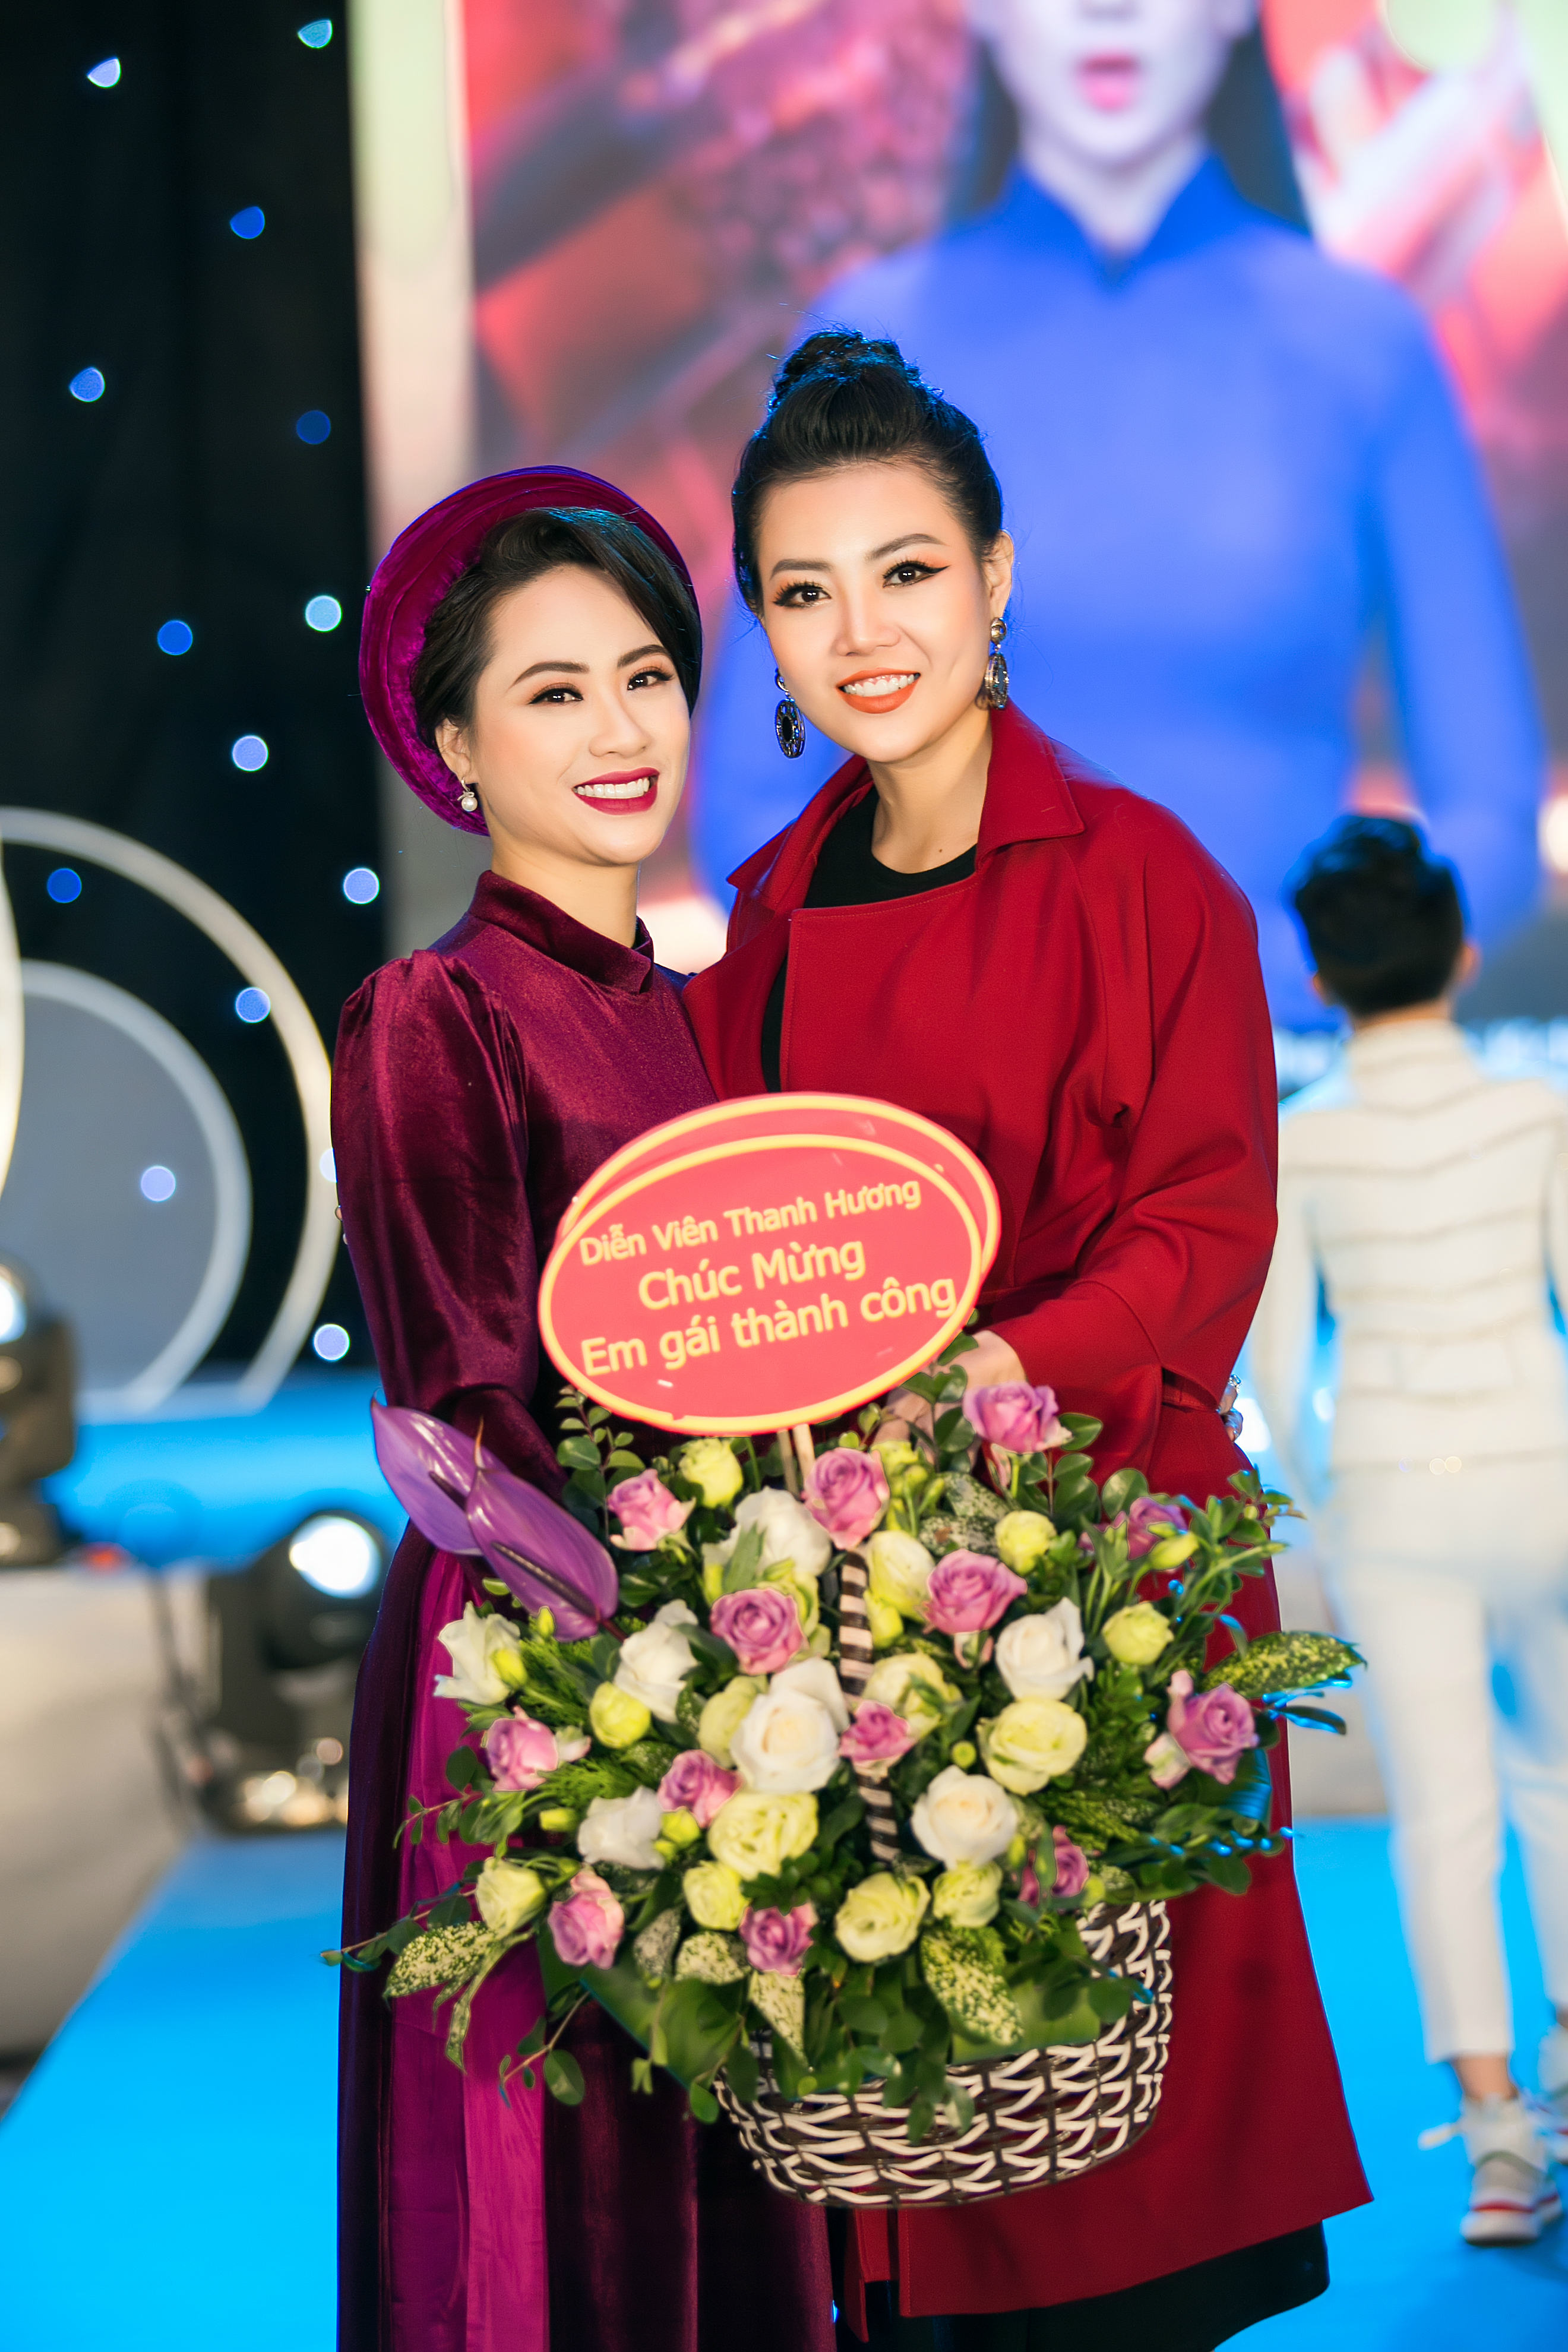 Diễn viên Thanh Hương tặng hoa chúc mừng người em Vân Trần nhân dịp cô ra mắt bộ sưu tập mới